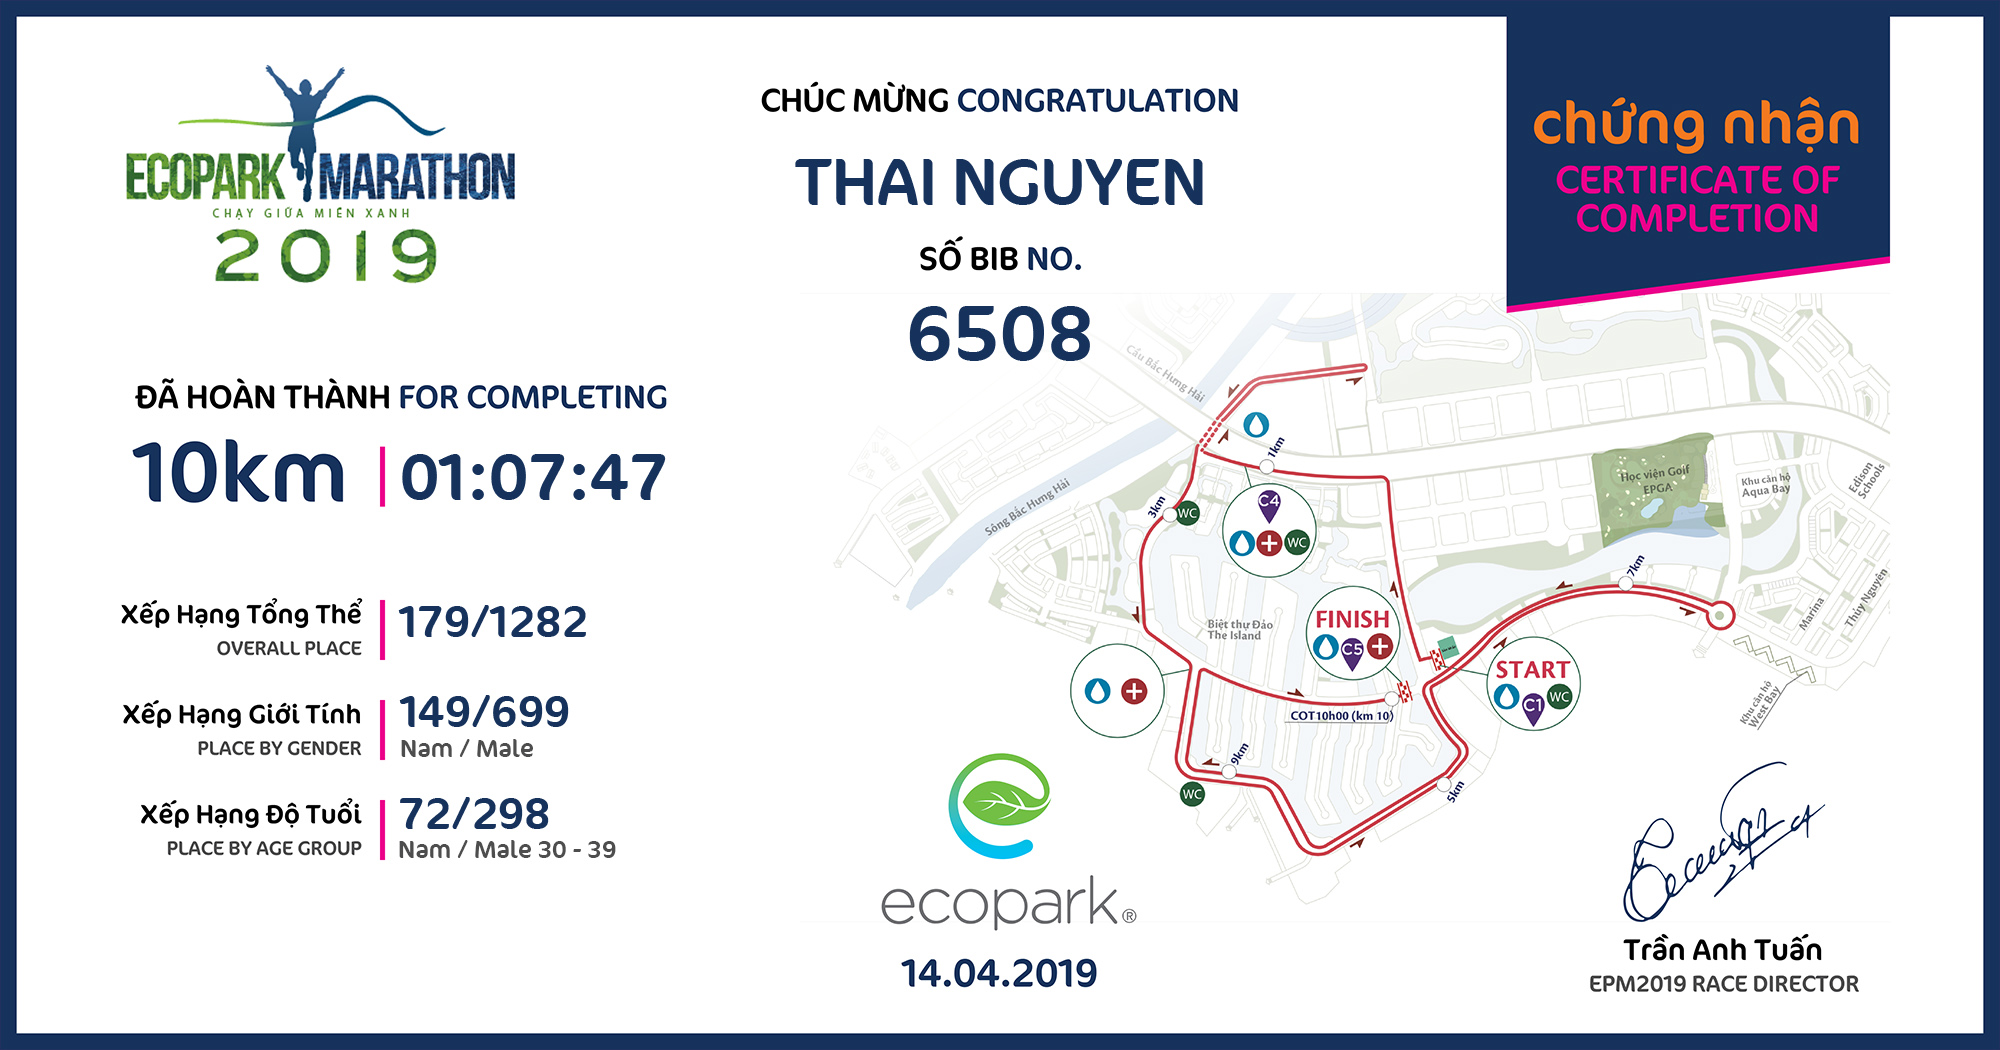 6508 - Thai Nguyen